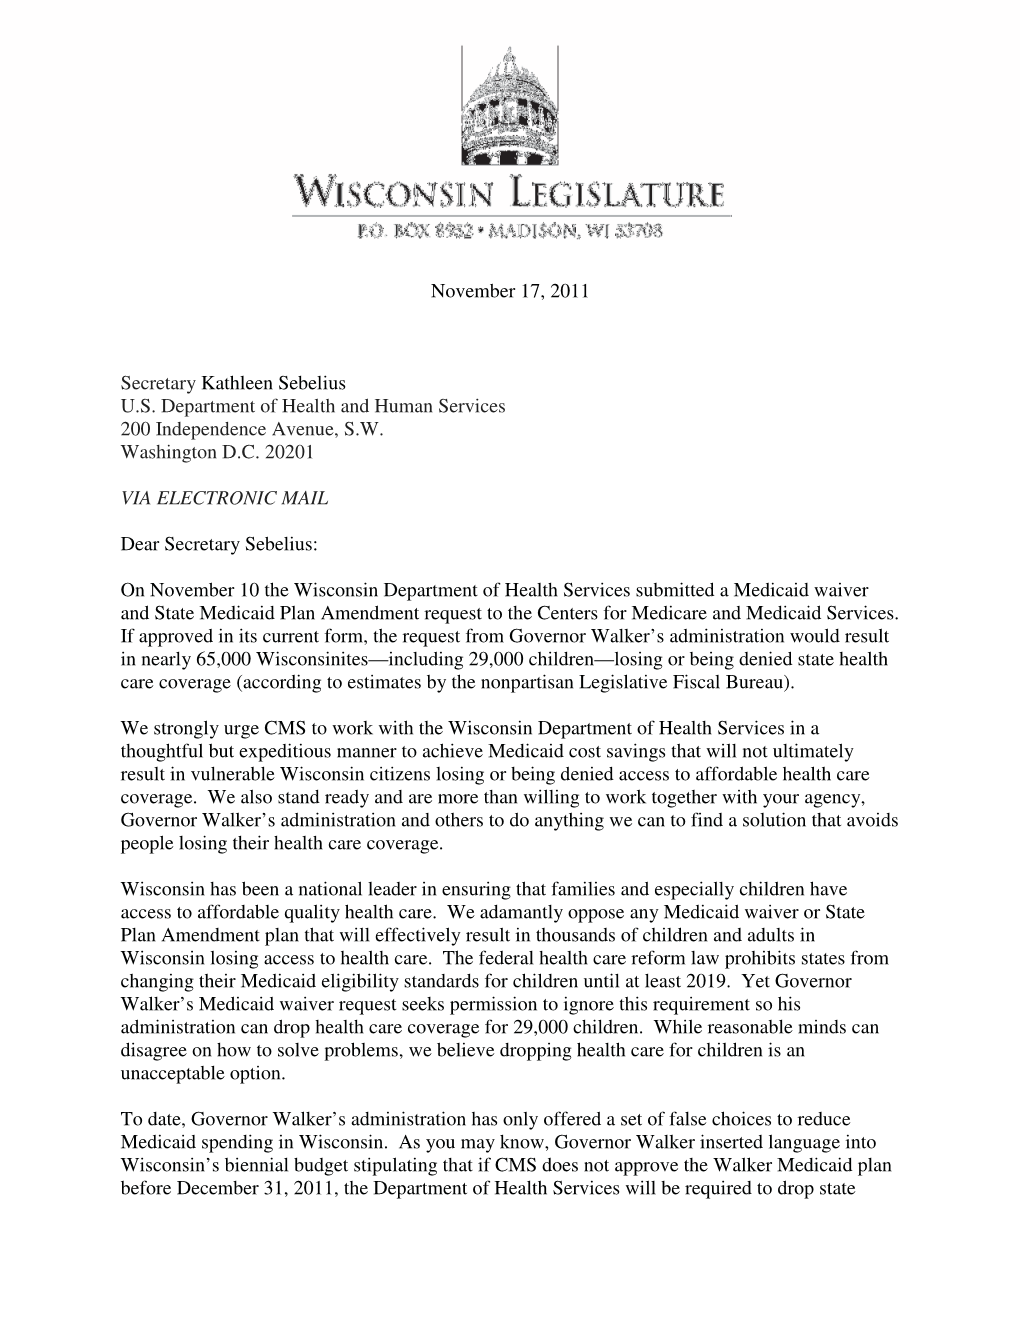 Dem HHS Waiver Letter – 11.17.2011